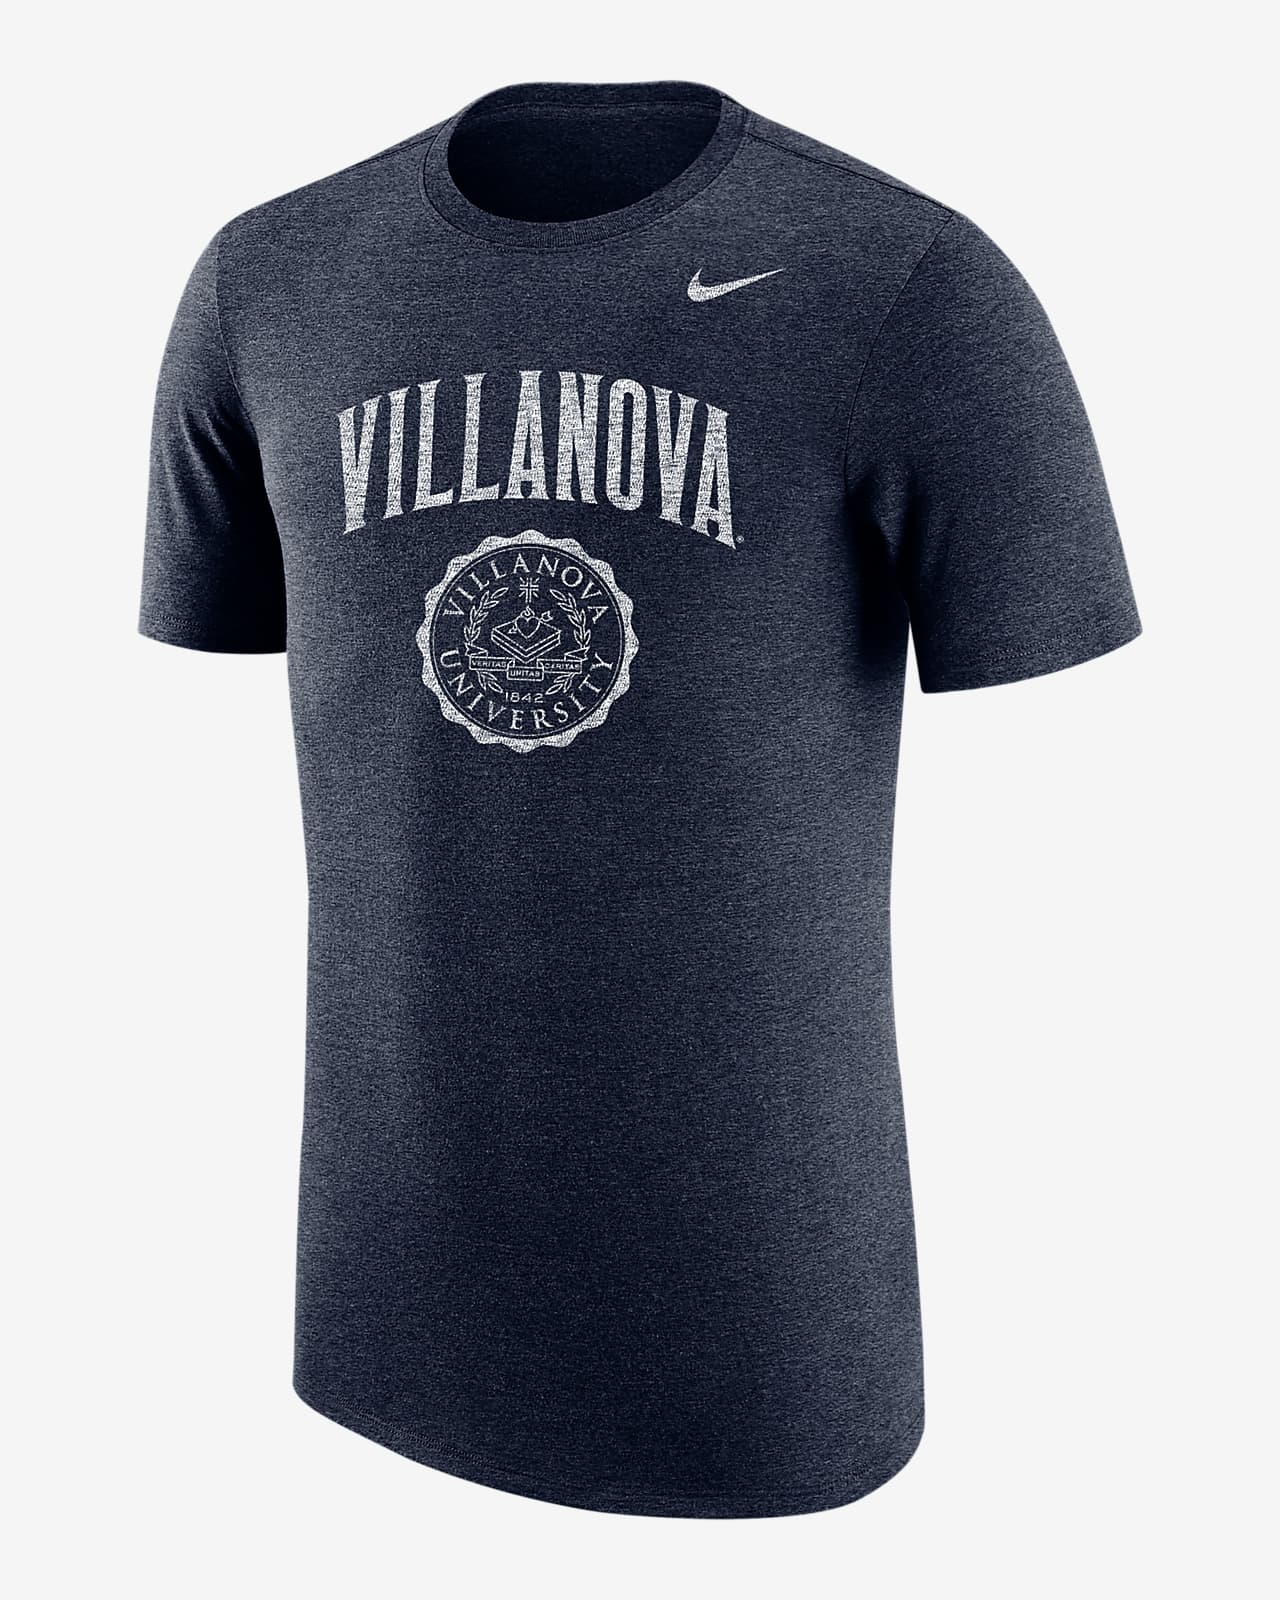 Nike College (Villanova) Men's T-Shirt